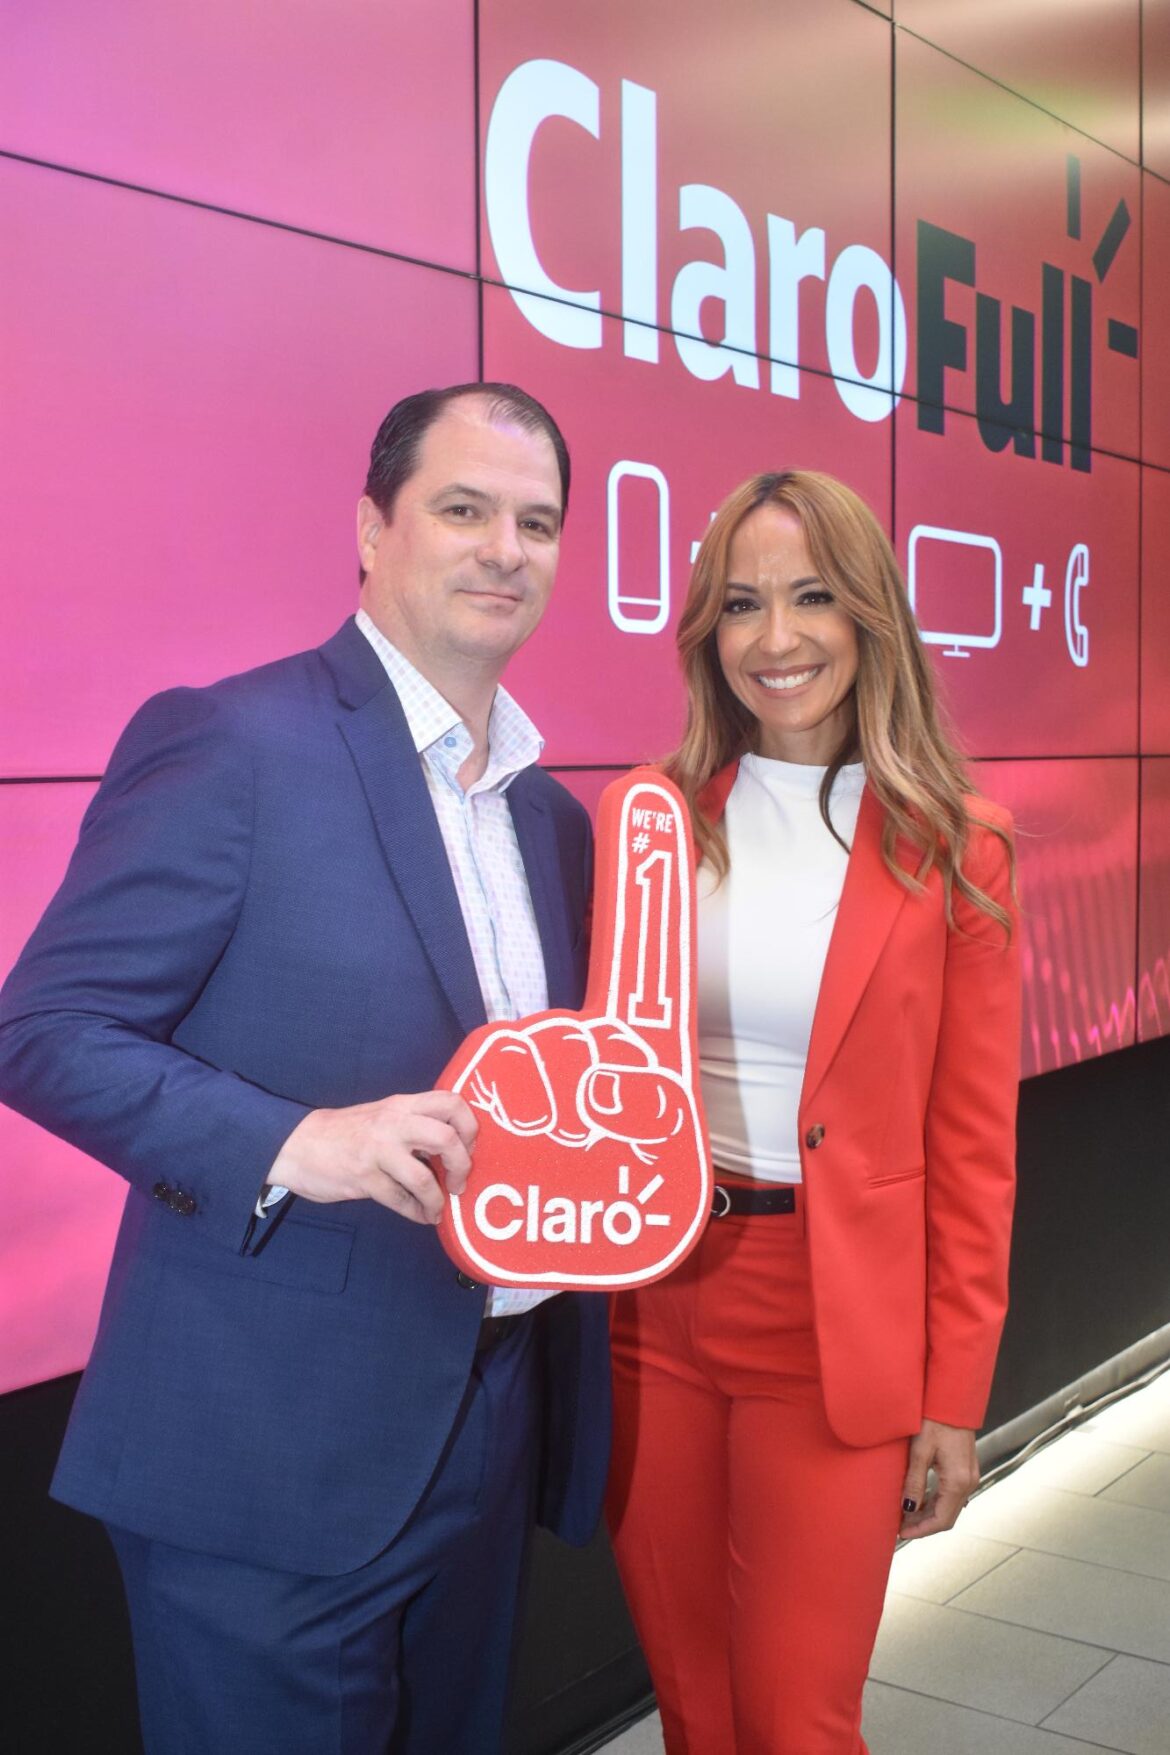 CLARO anuncia ahorros y beneficios al combinar servicios con CLAROFULL